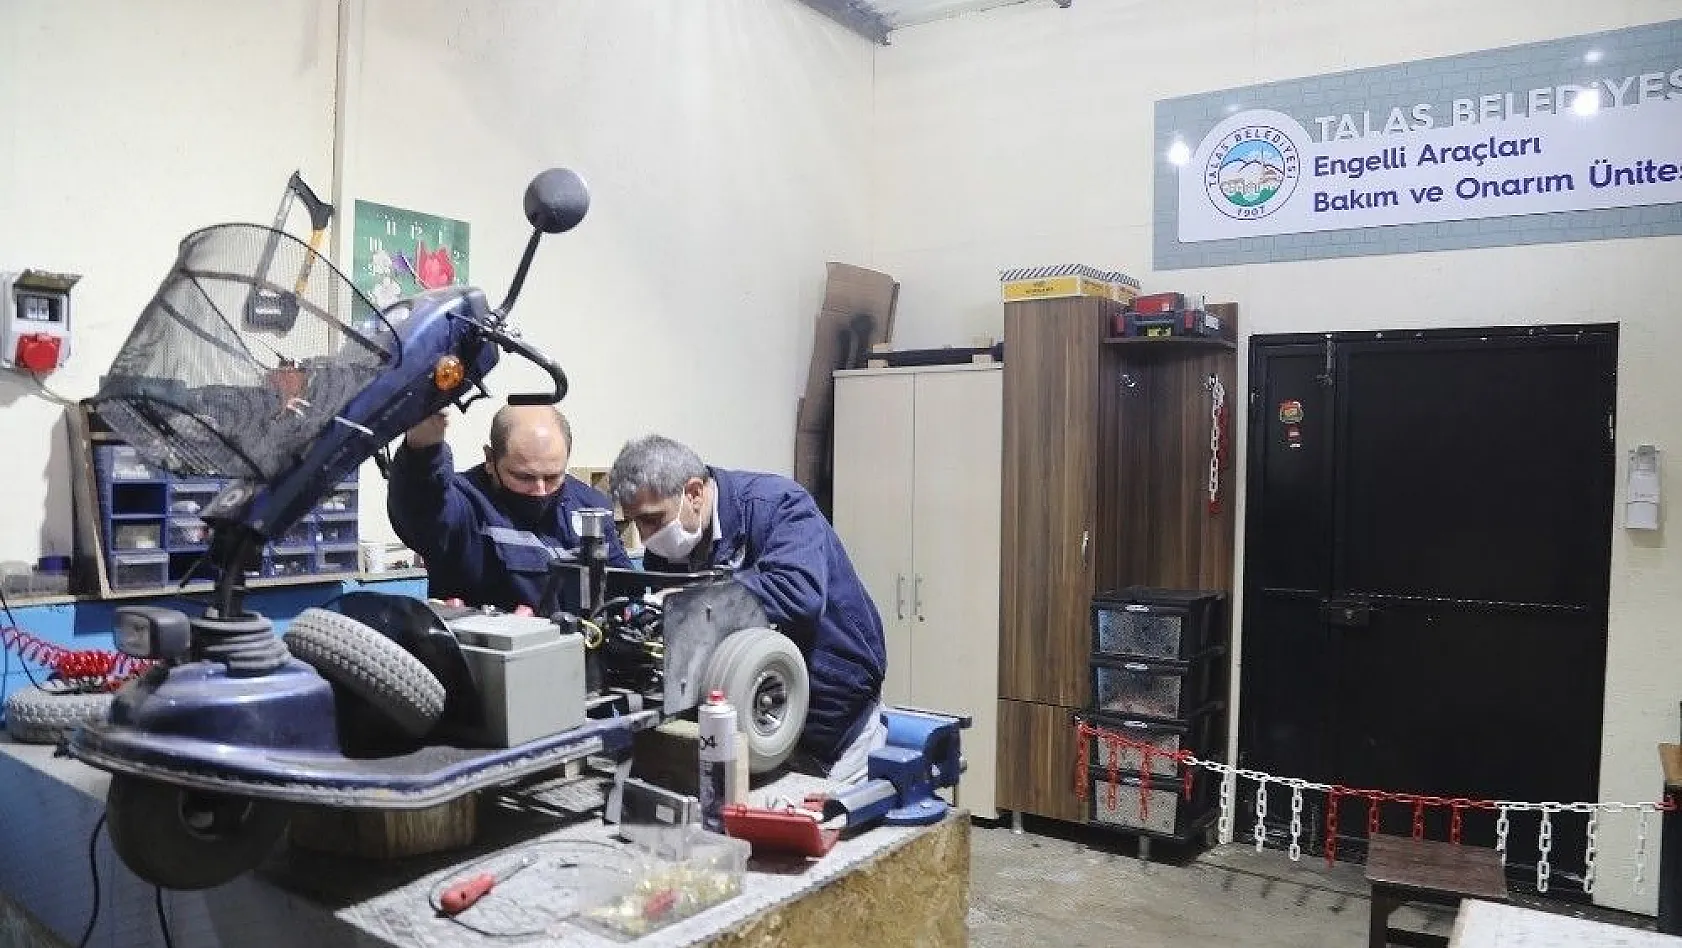 Engelli araçlarının bakım ve onarımı Talas Belediyesi'nden